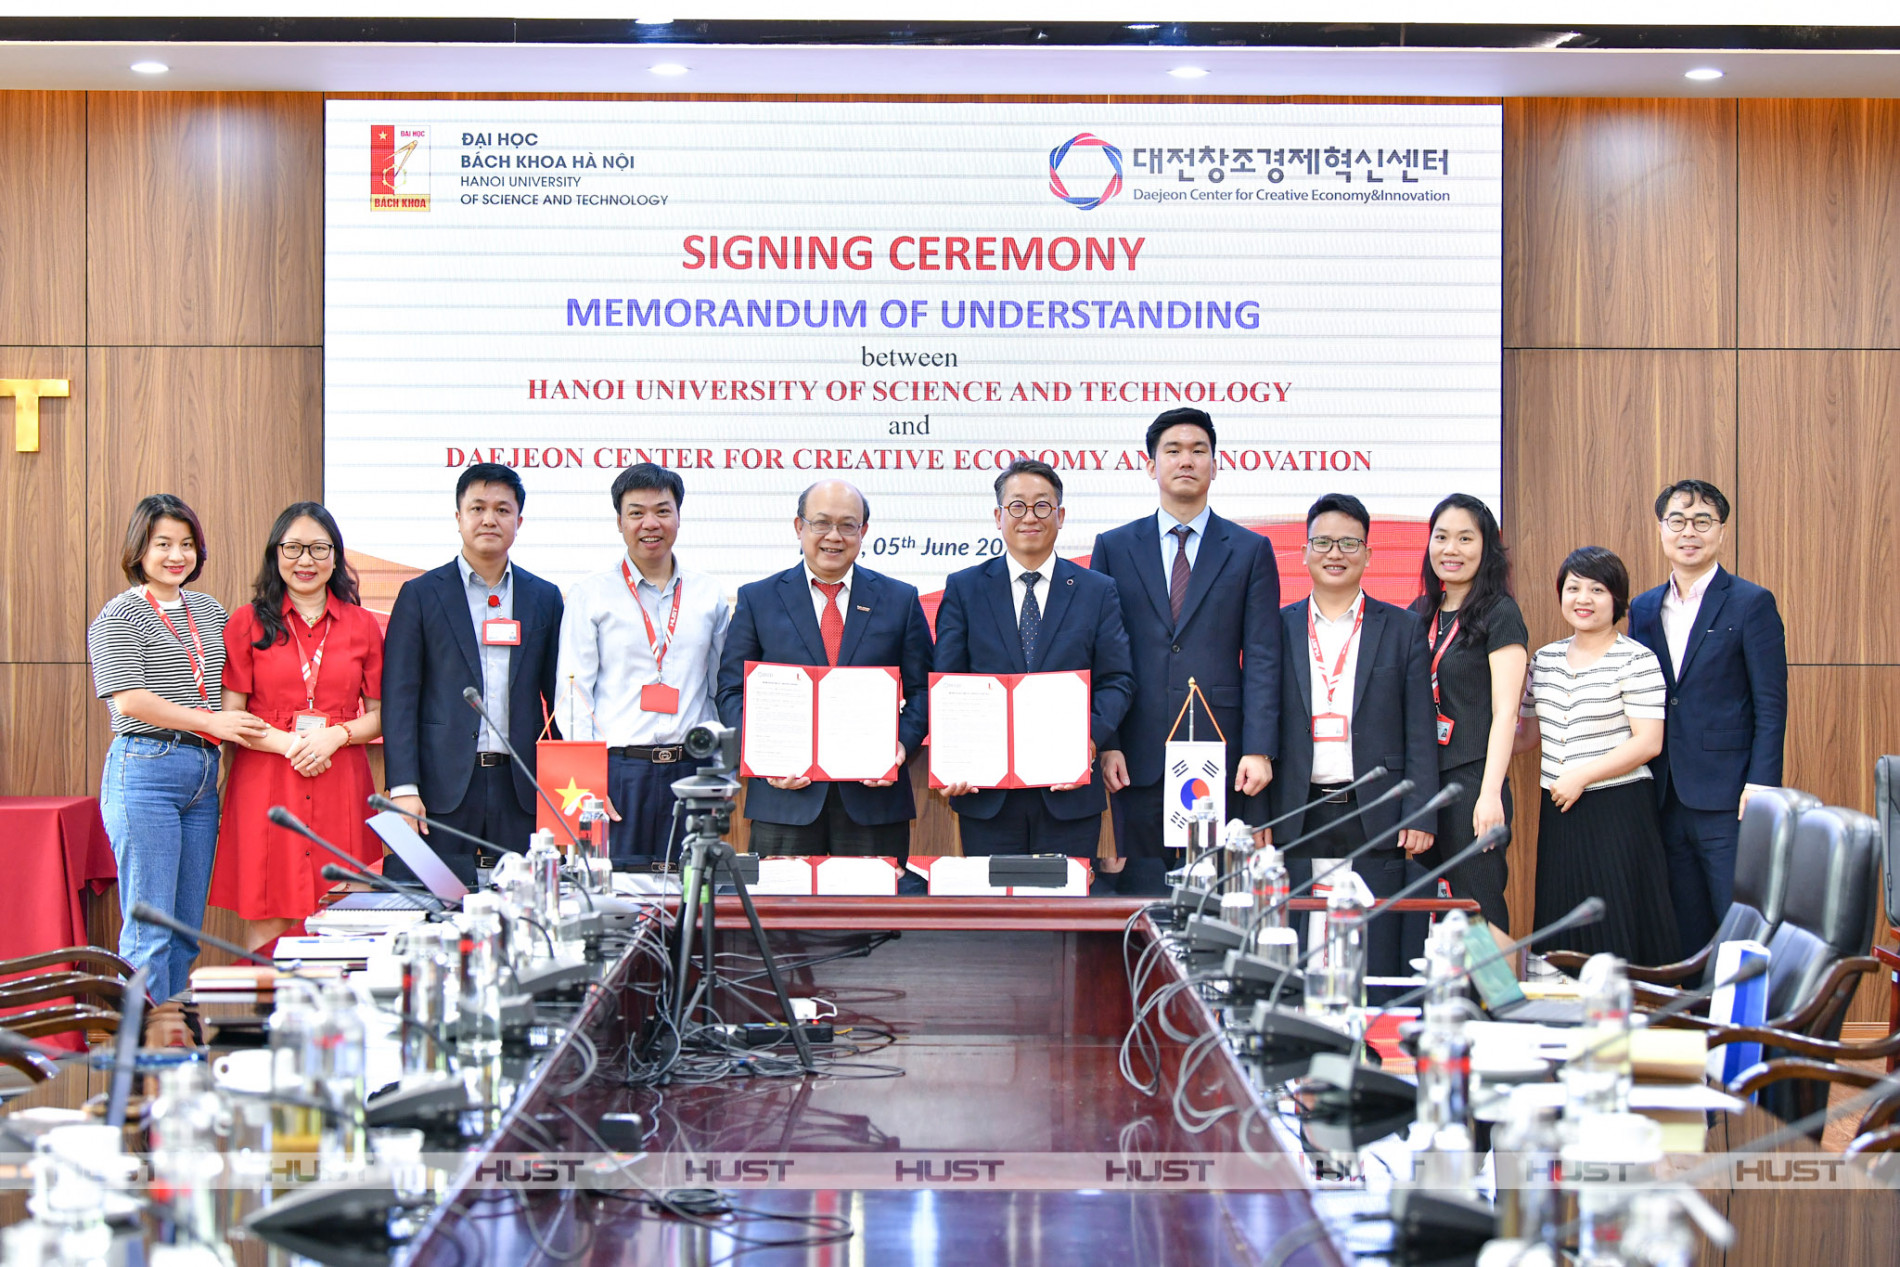 Bách khoa Hà Nội đẩy mạnh hợp tác hoạt động khởi nghiệp, đổi mới sáng tạo với DCCEI (Hàn Quốc)